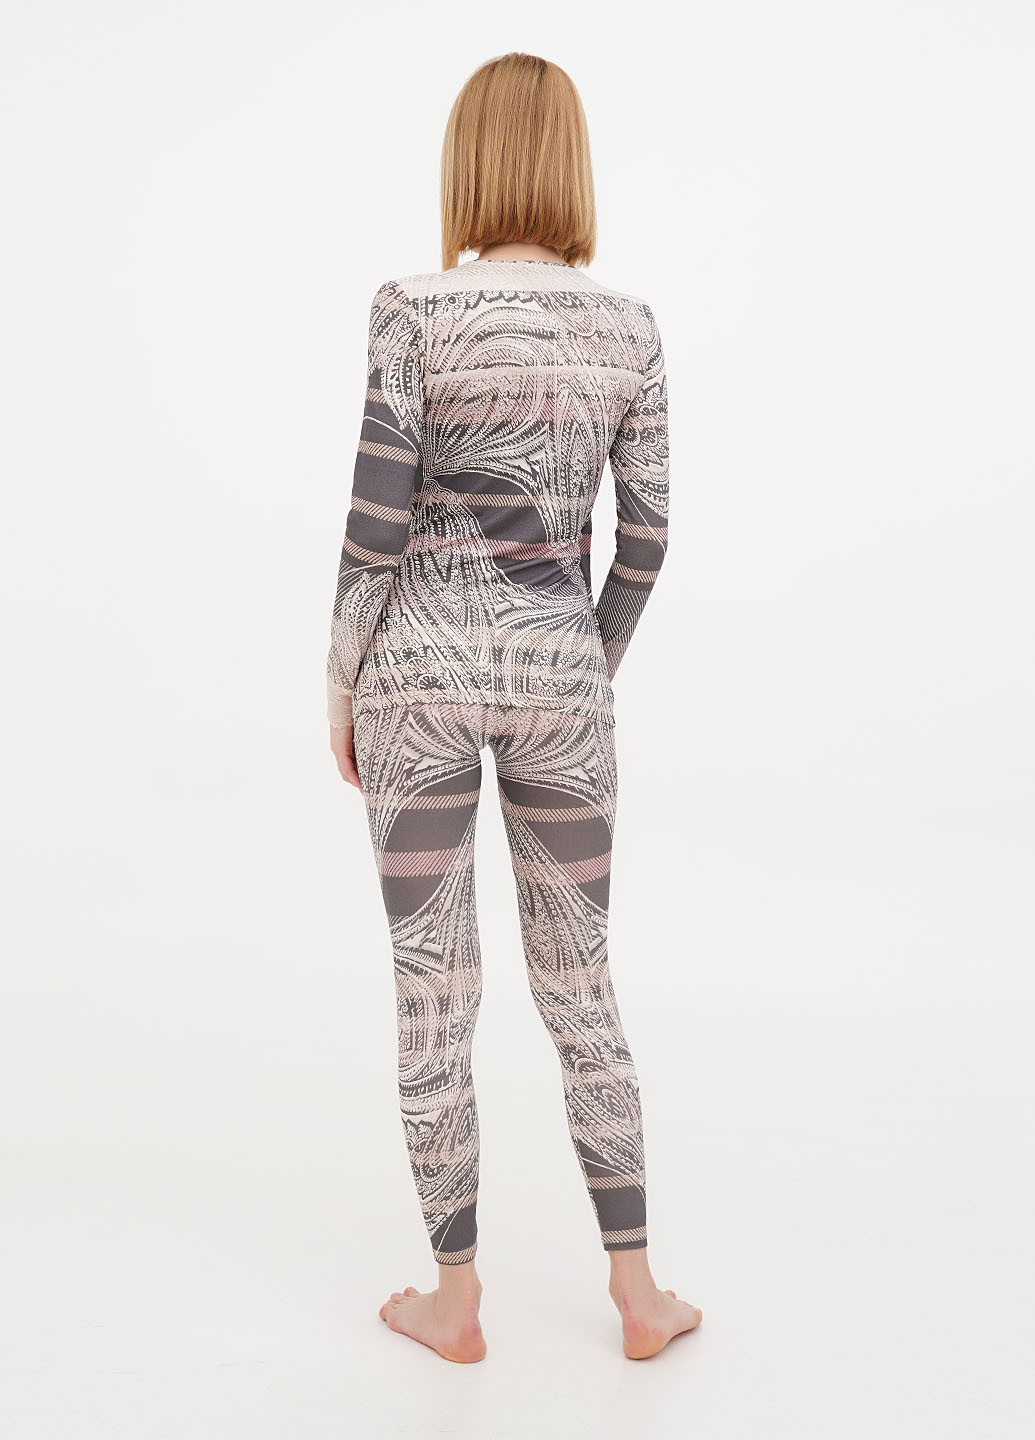 Комбинированная всесезон пижама (лонгслив, леггинсы) лонгслив + леггинсы Aniele